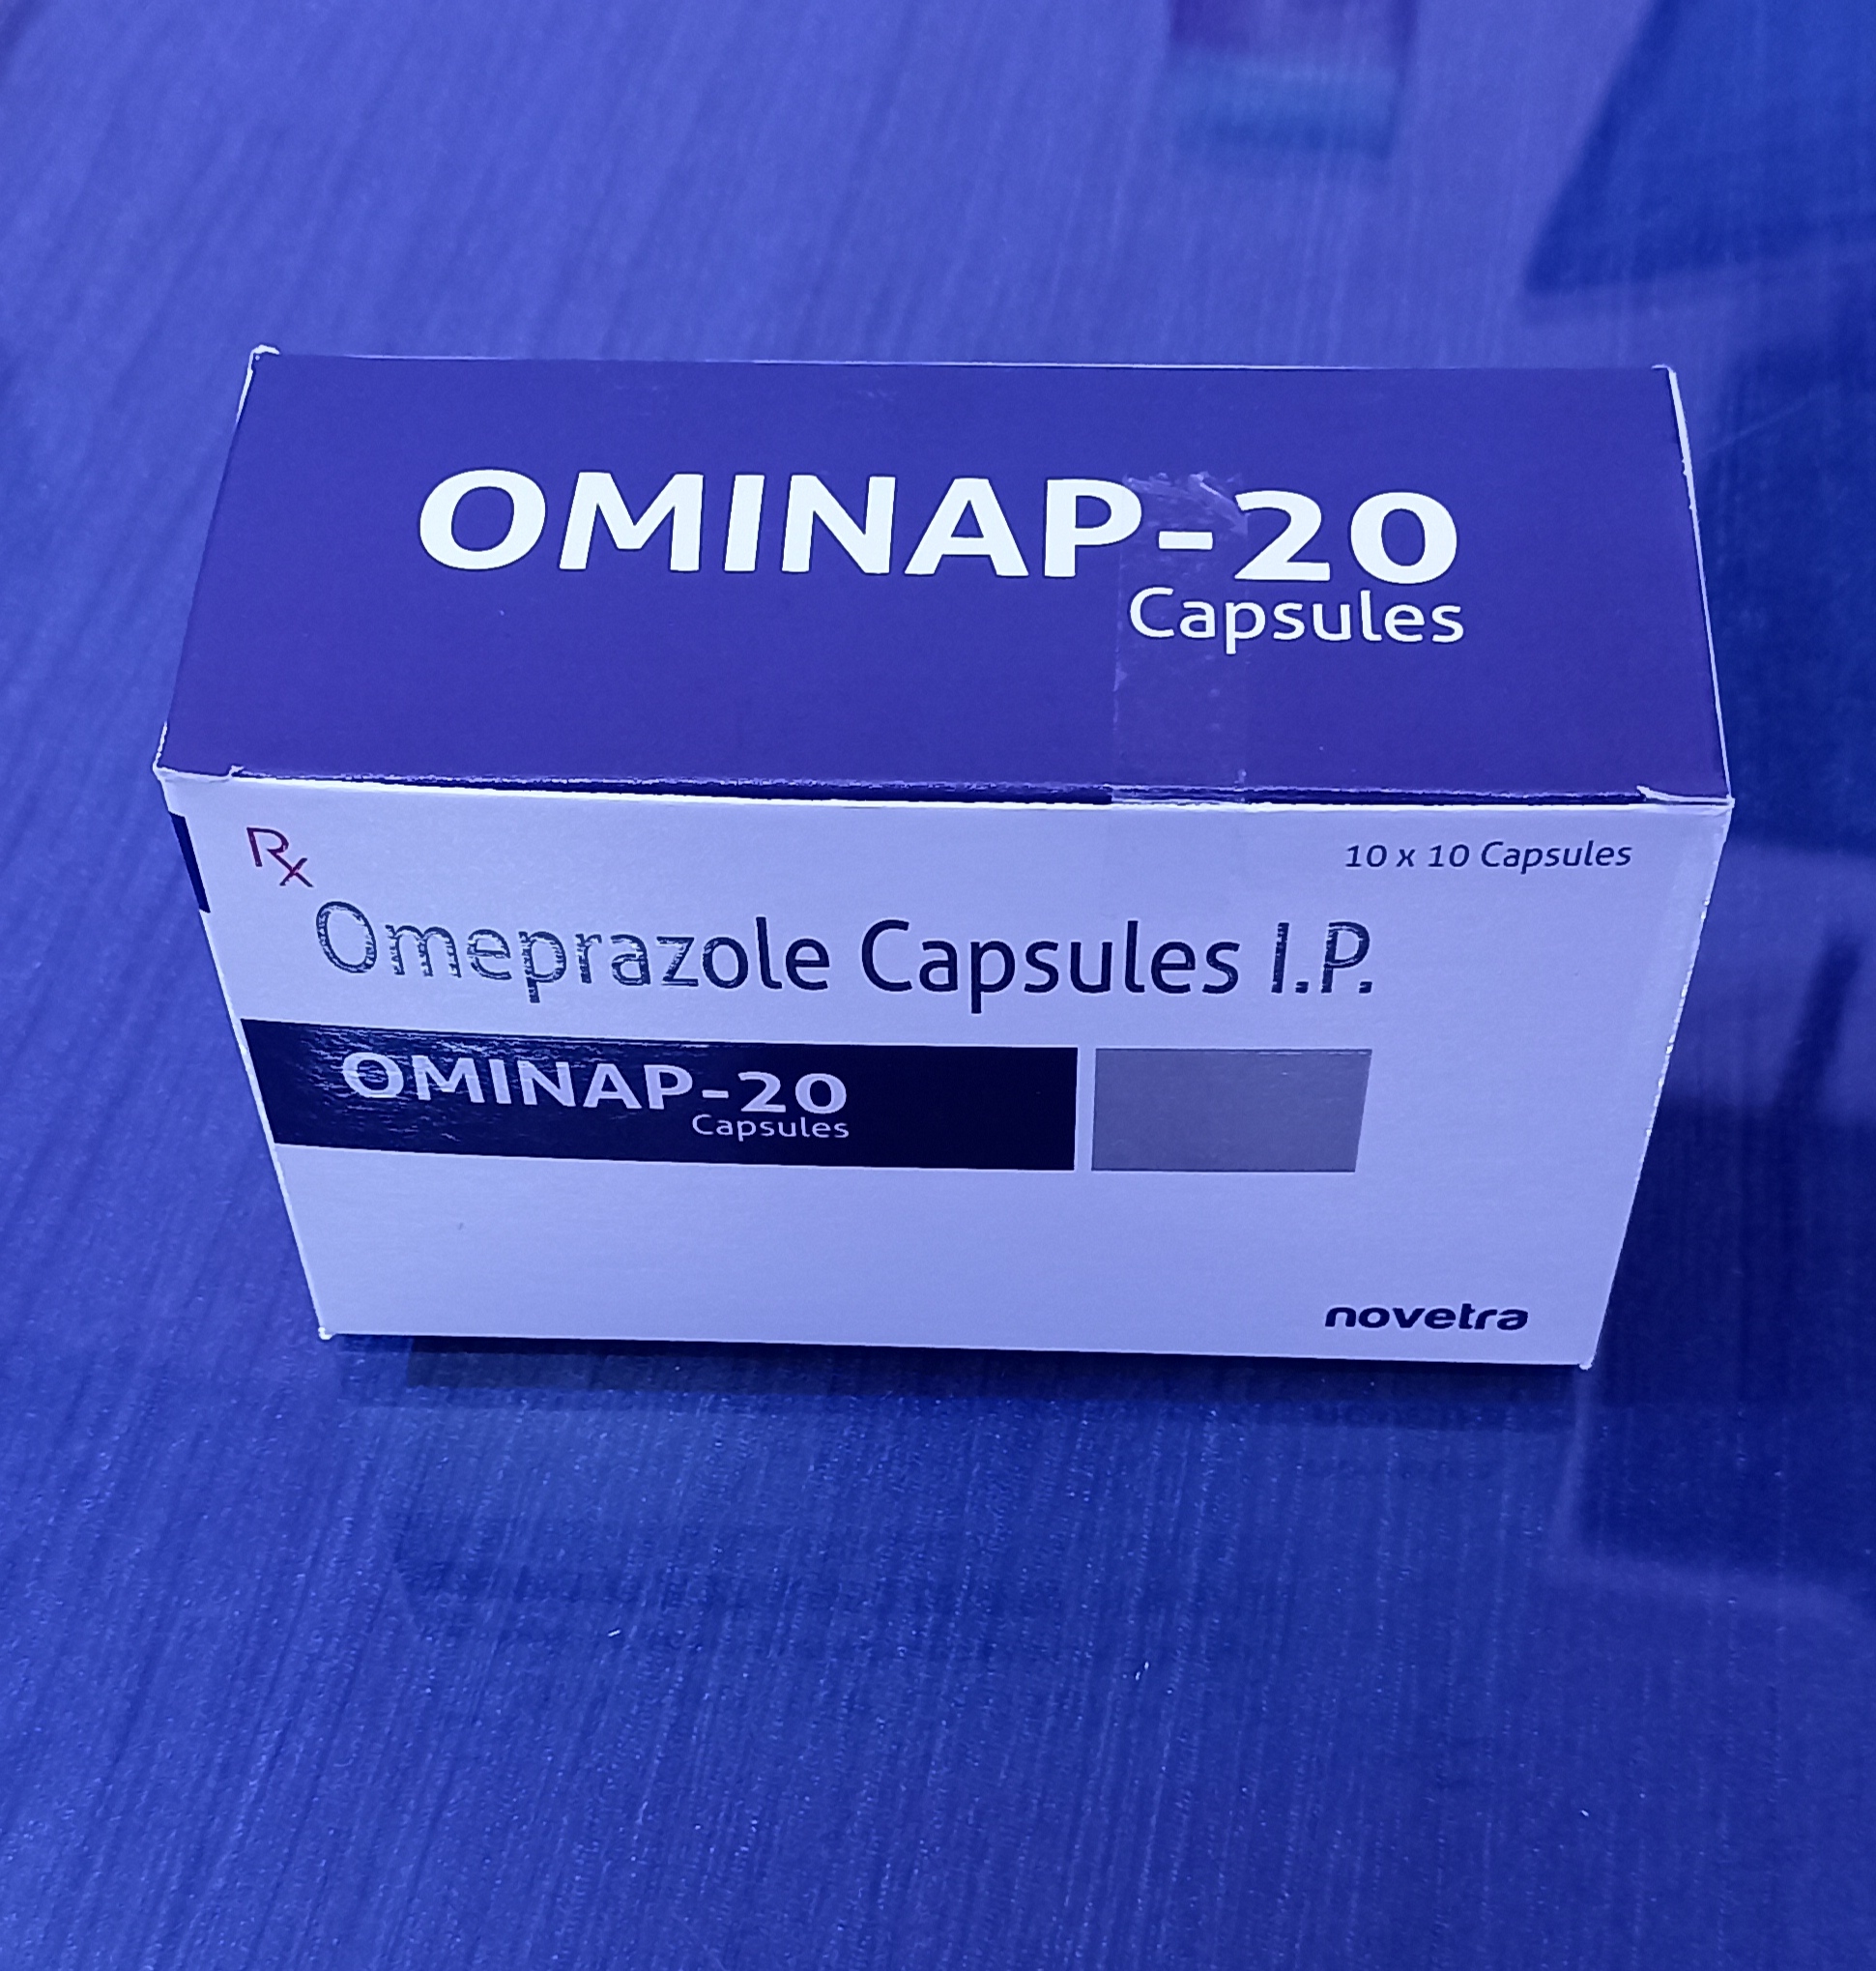 OMINAP-20